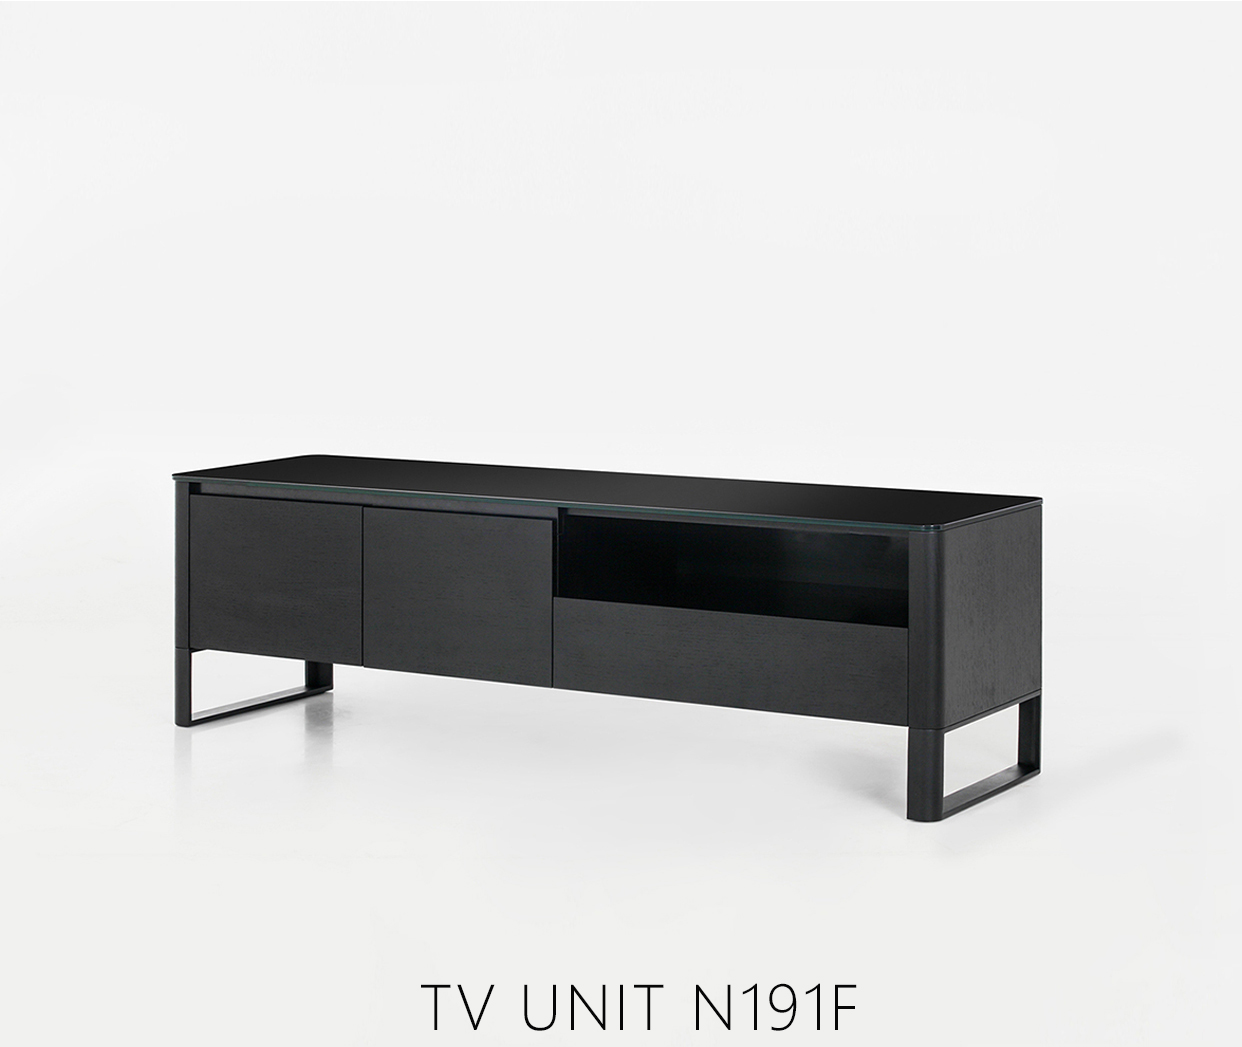 TV UNIT N191F